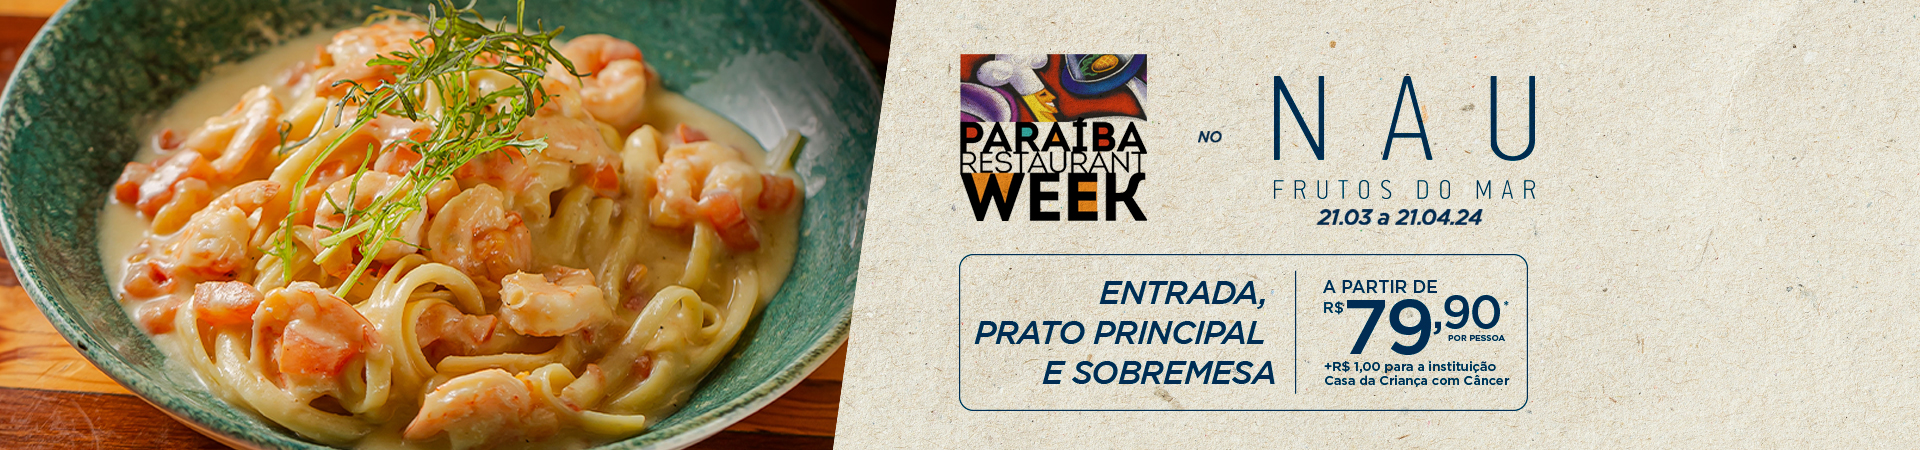 Restaurant Week Paraíba